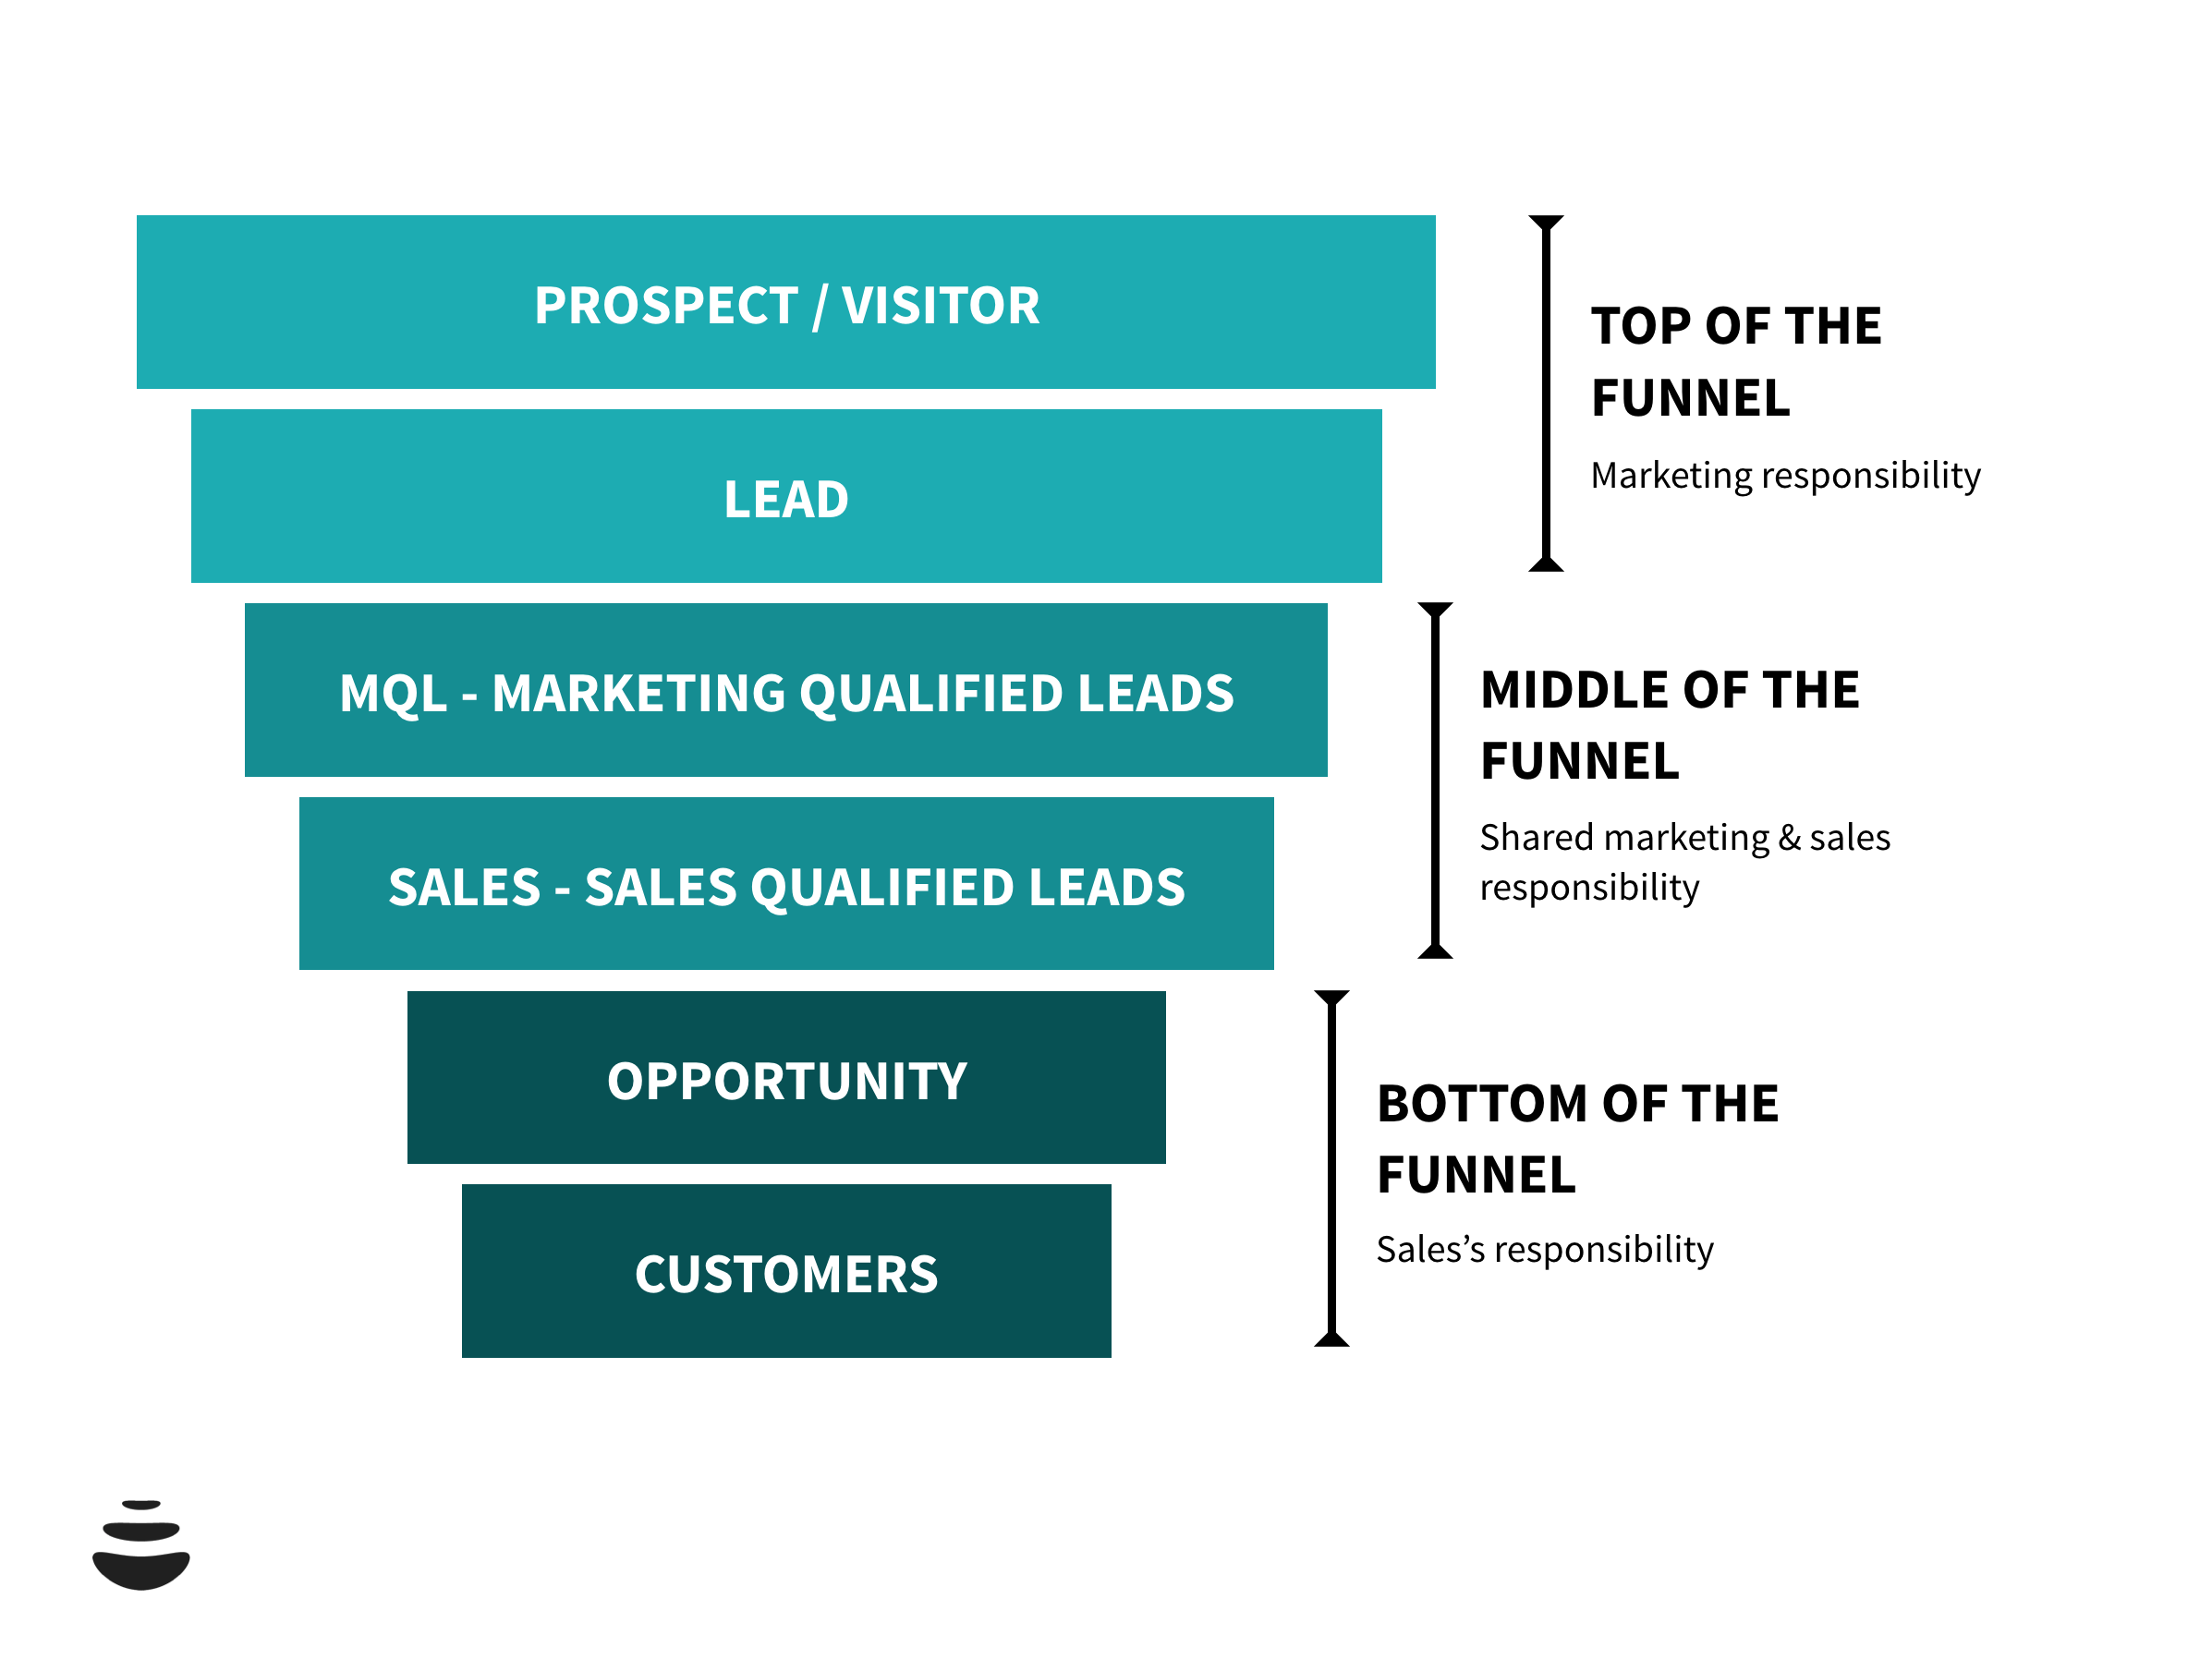 Definizione dei 6 stage del marketing e sales funnel.